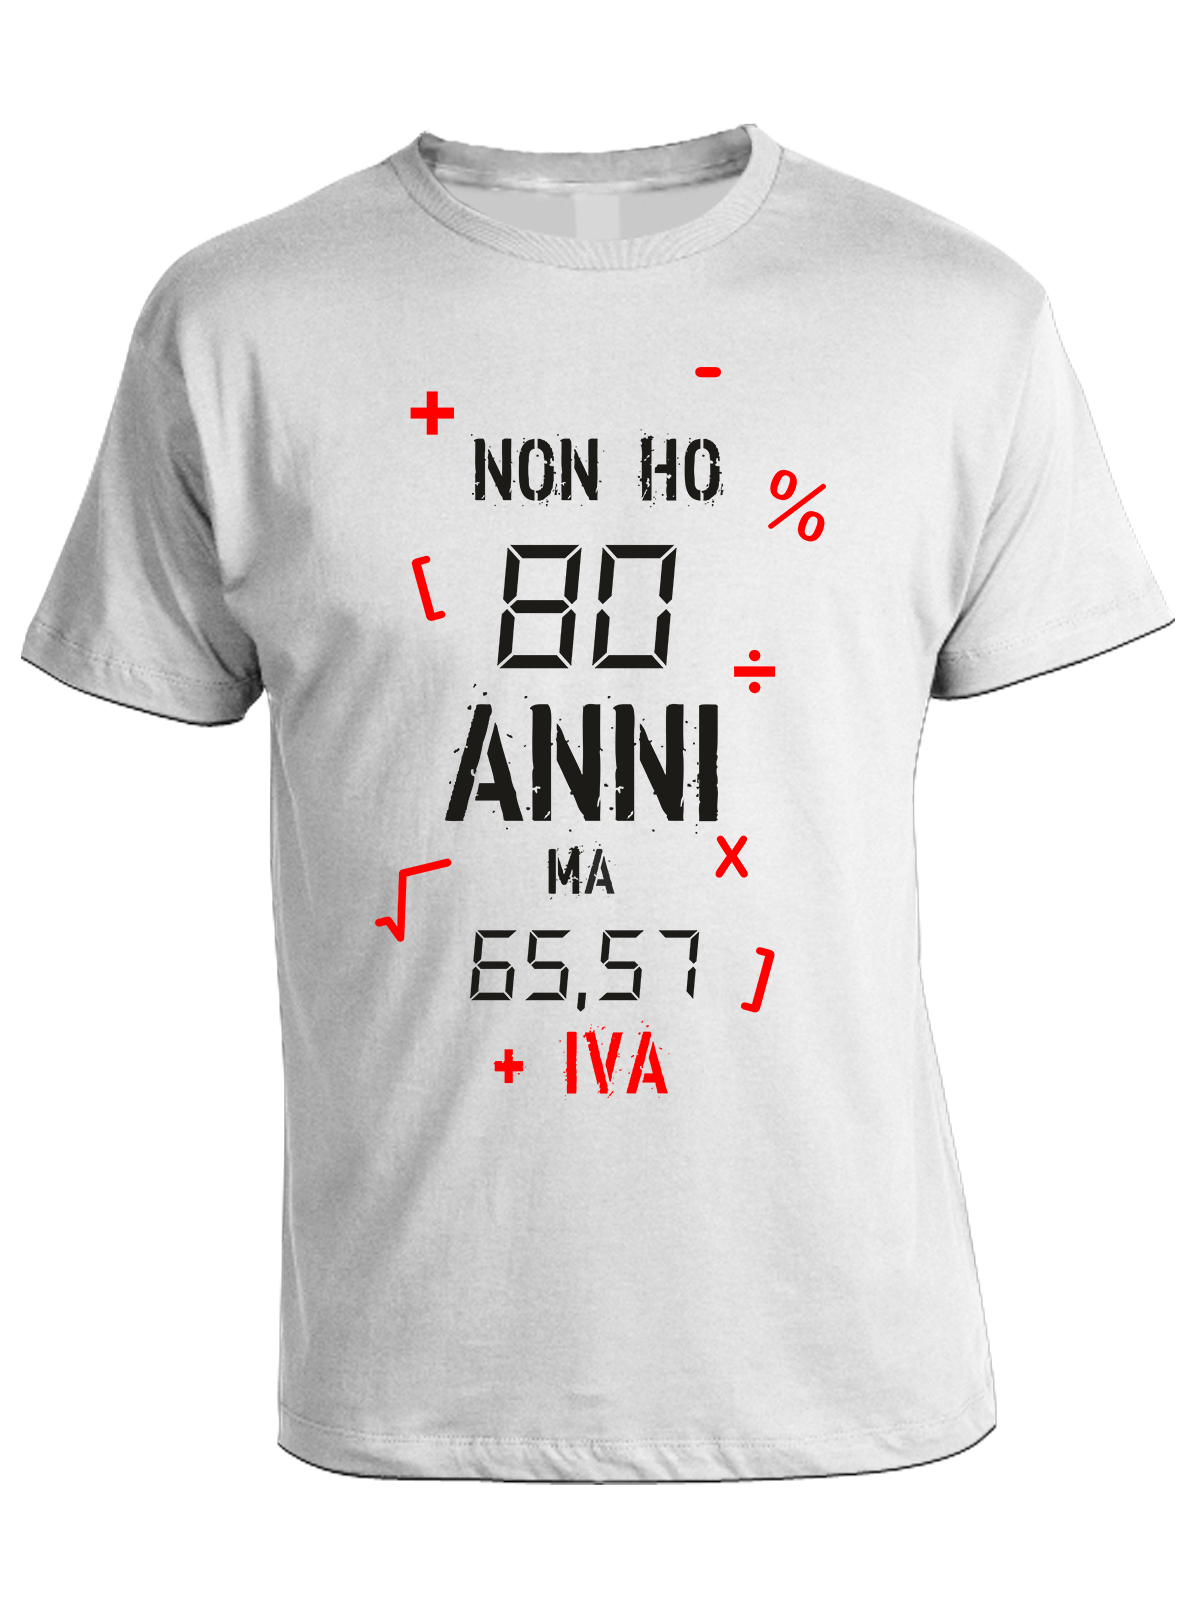 Tshirt Compleanno Non ho 80 anni ma 65,57 + IVA - tshirt simpatiche e  divertenti - idea regalo - ColorFamily